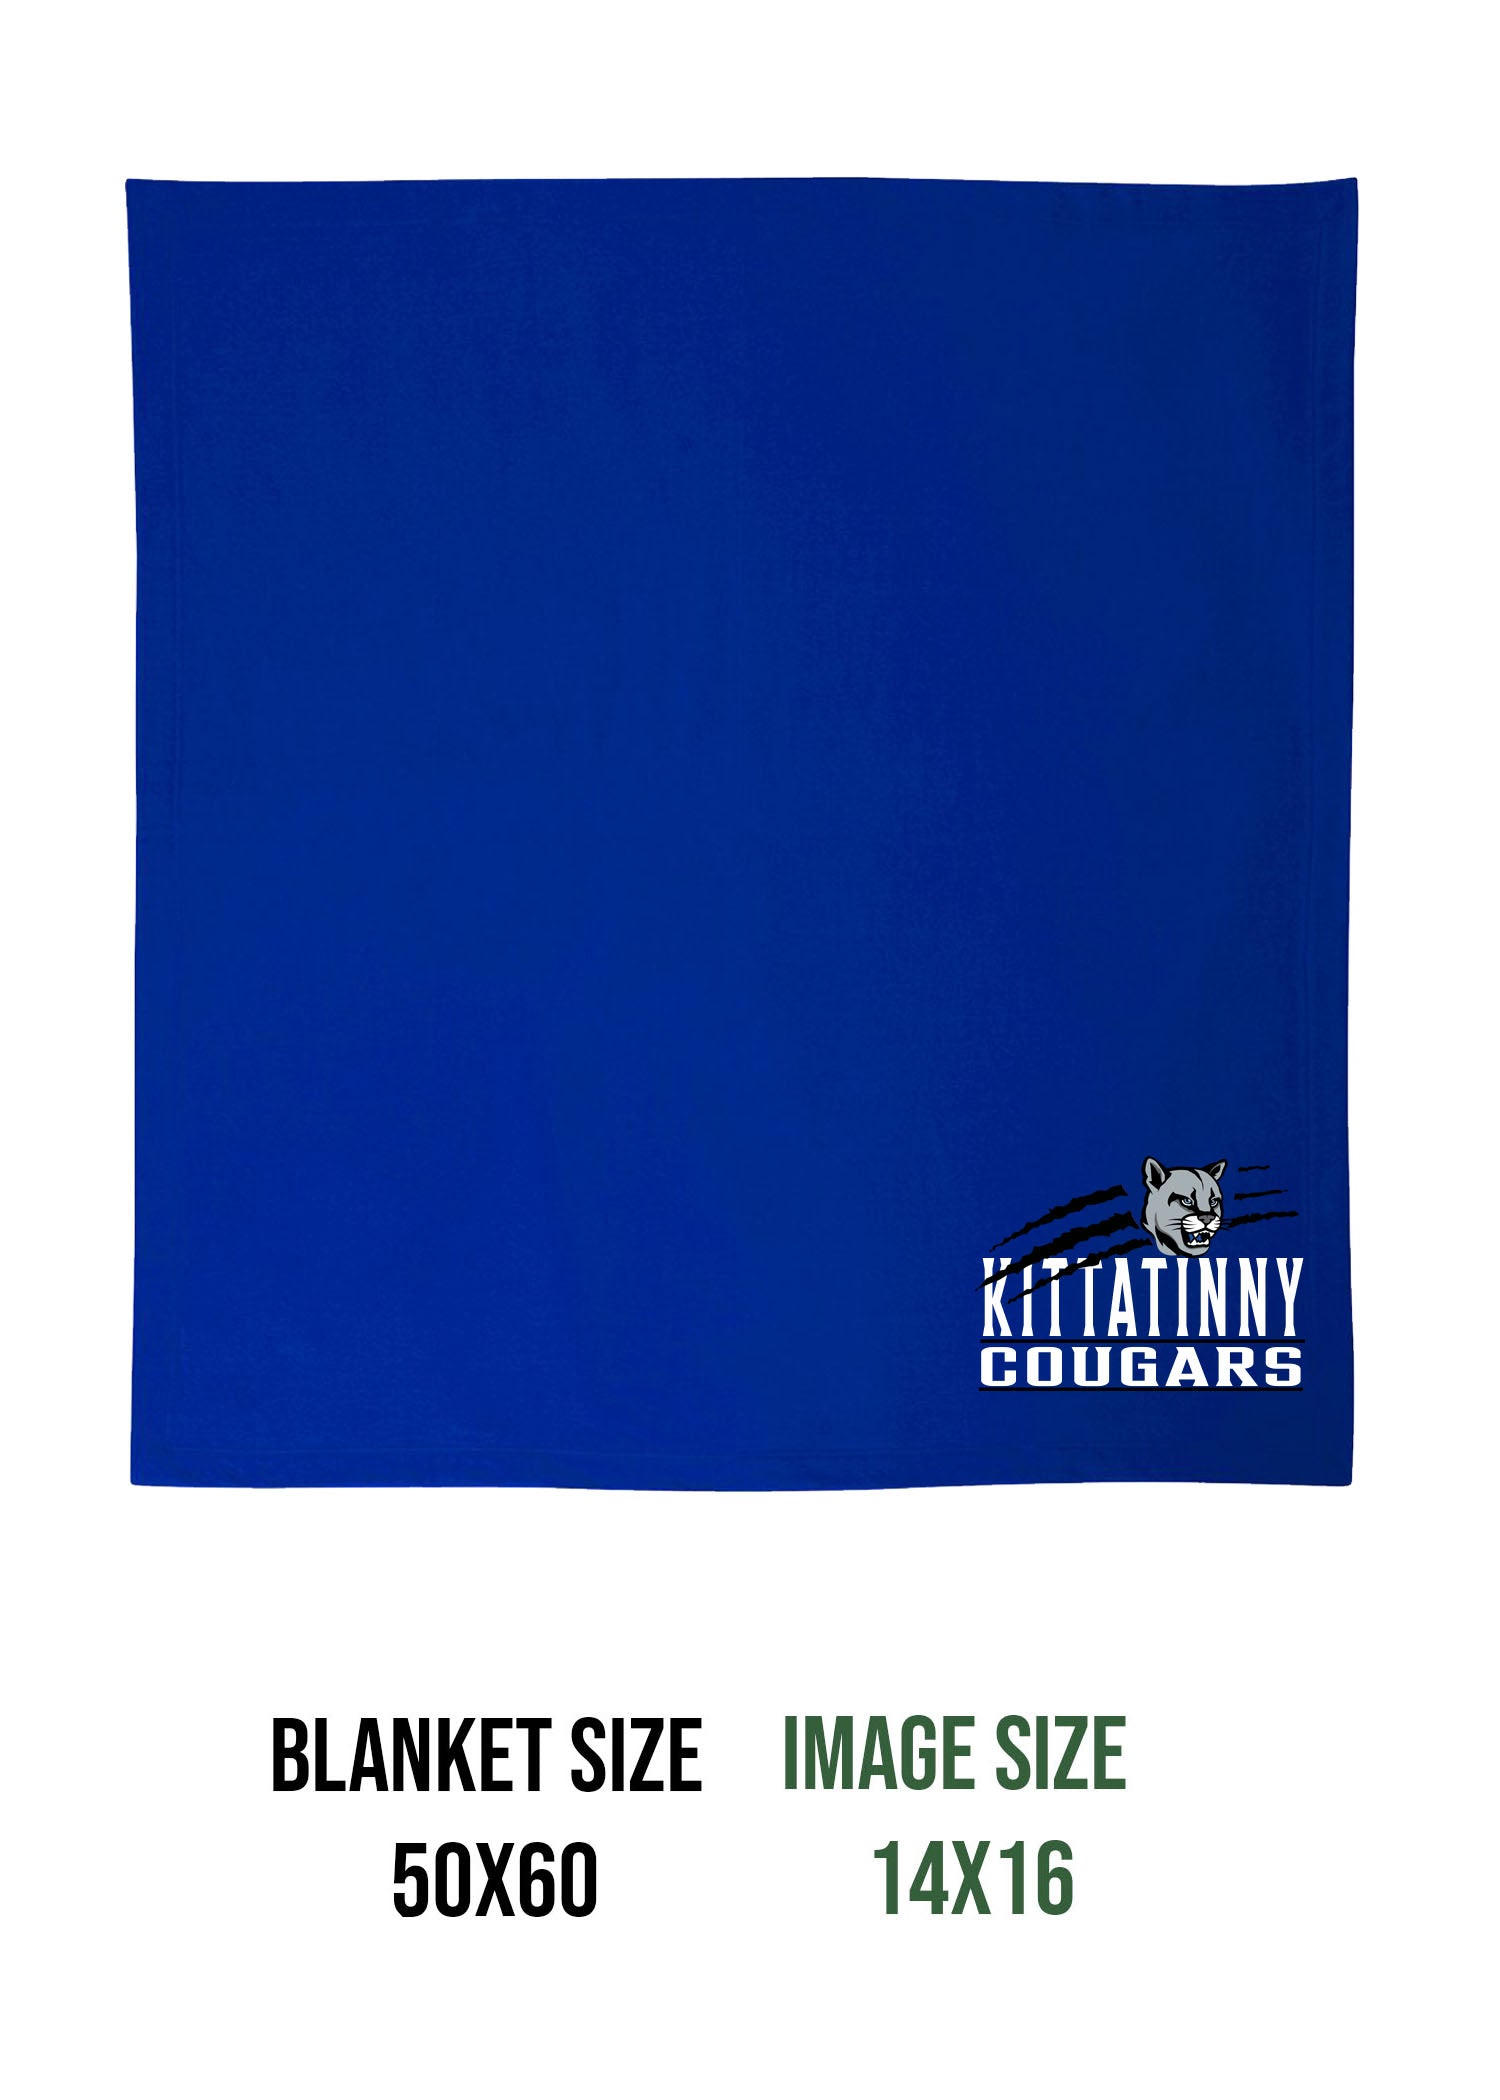 KRHS Design 16 Blanket